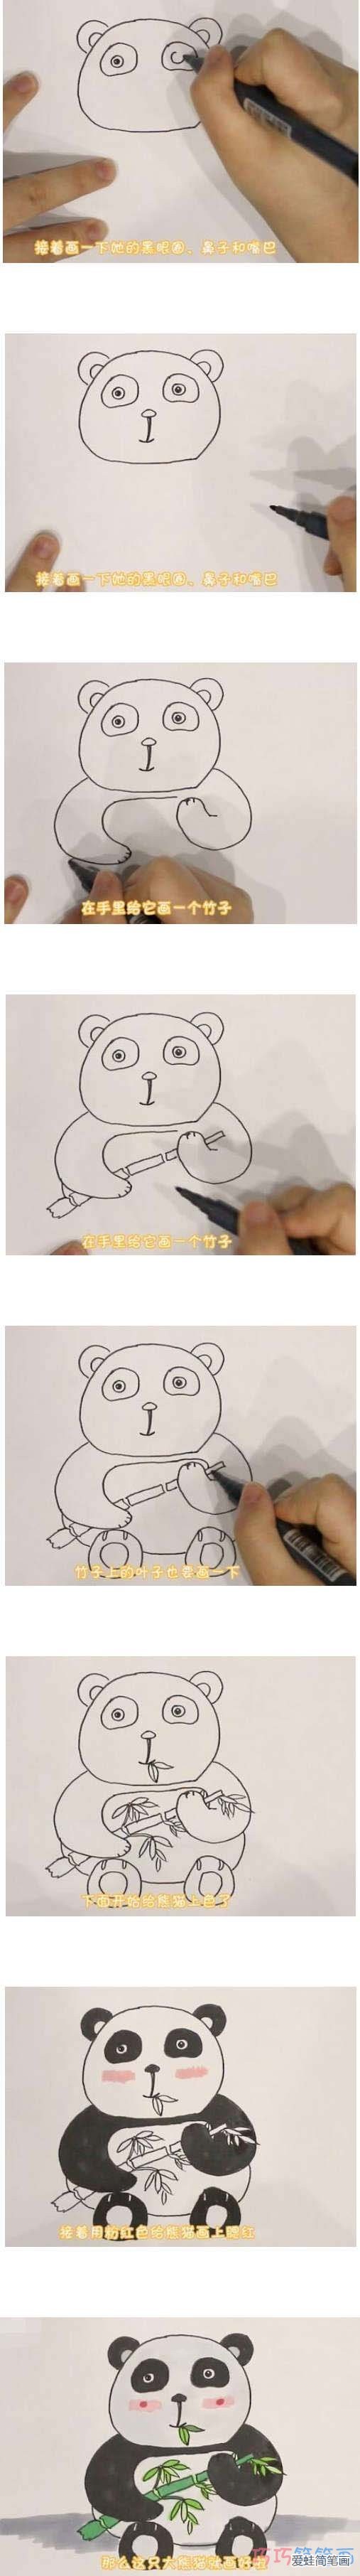 教你如何画熊猫简笔画